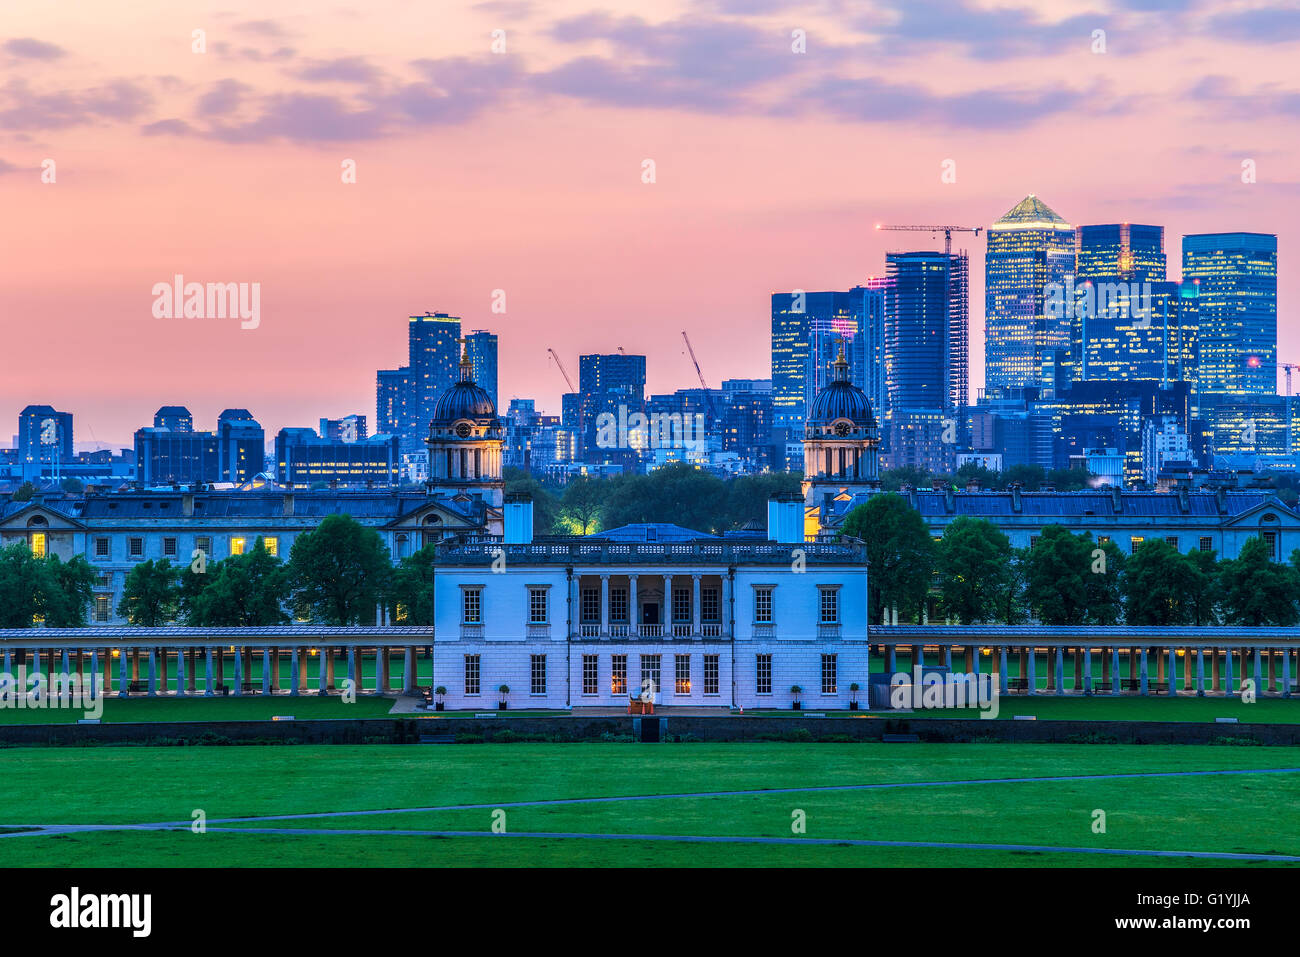 Vue sur Queens House et Canary Wharf depuis Greenwich Park, Londres avec un ciel de coucher de soleil Banque D'Images